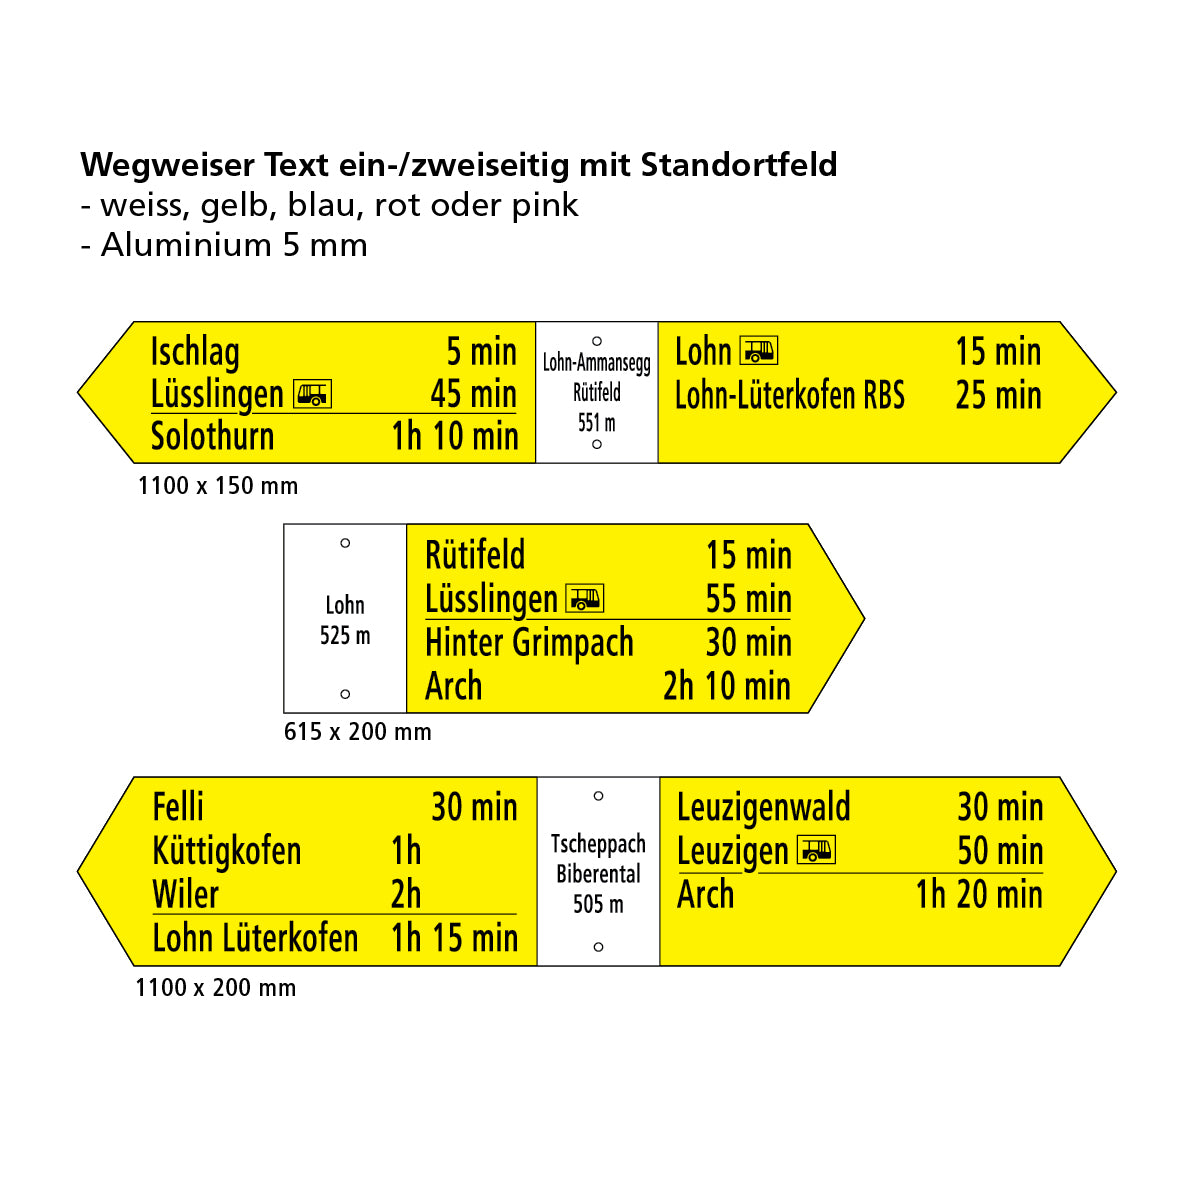 Wegweiser 615/120 mm, Text 2-seitig mit Standortfeld, hi/vo pulverbeschichtet und lackiert, Alu 5 mm, gelocht